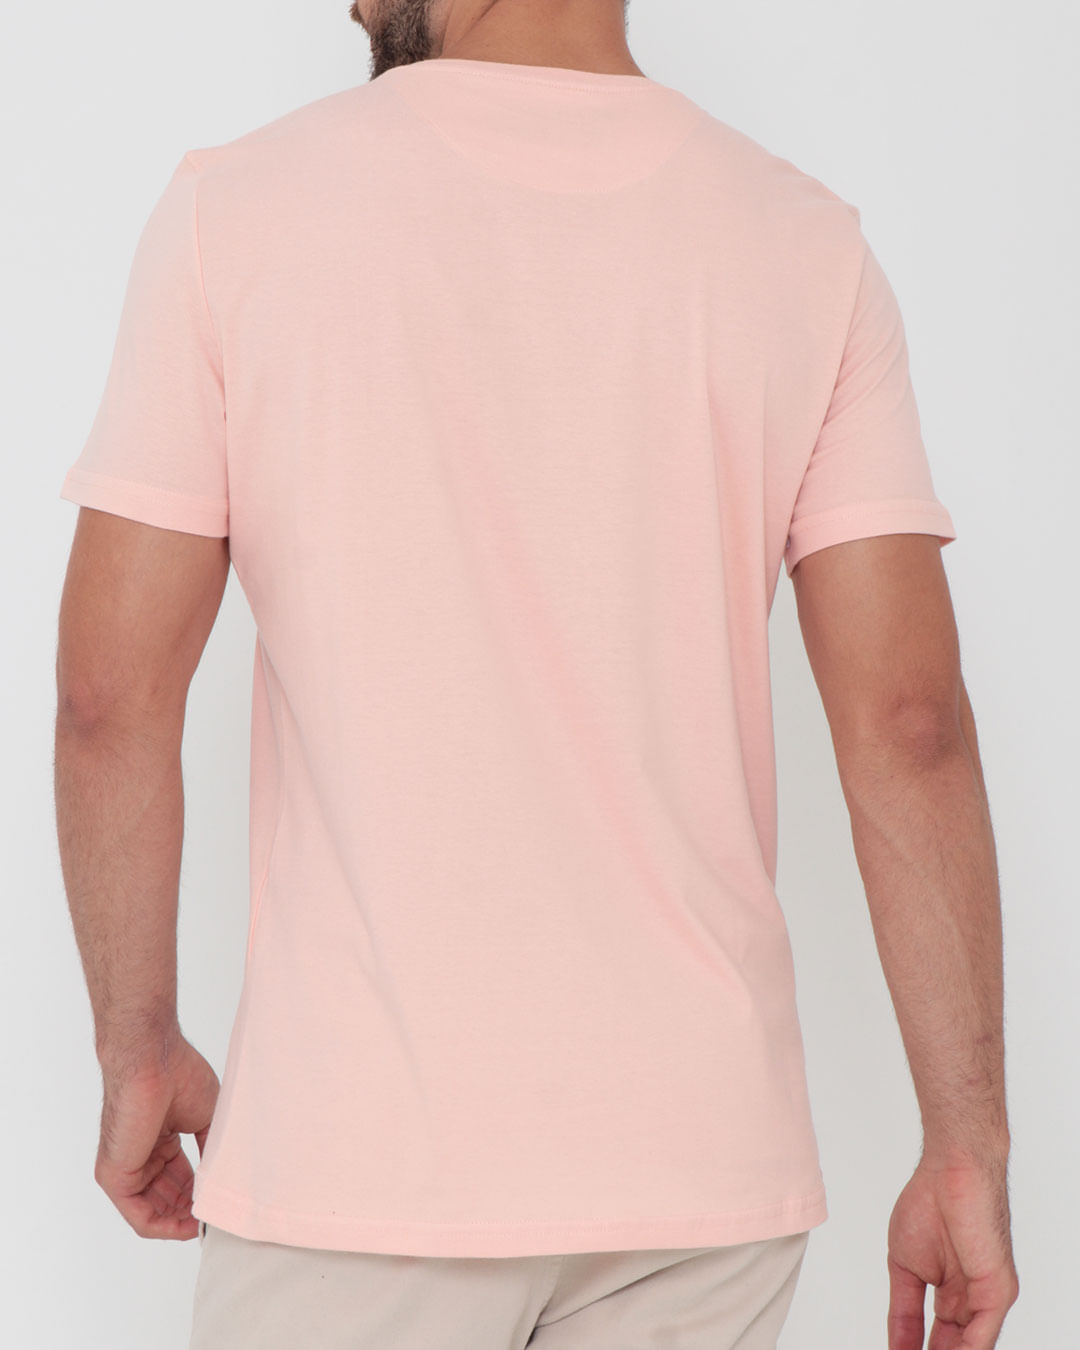 Camiseta-9360-Fashion---Rosa-Claro